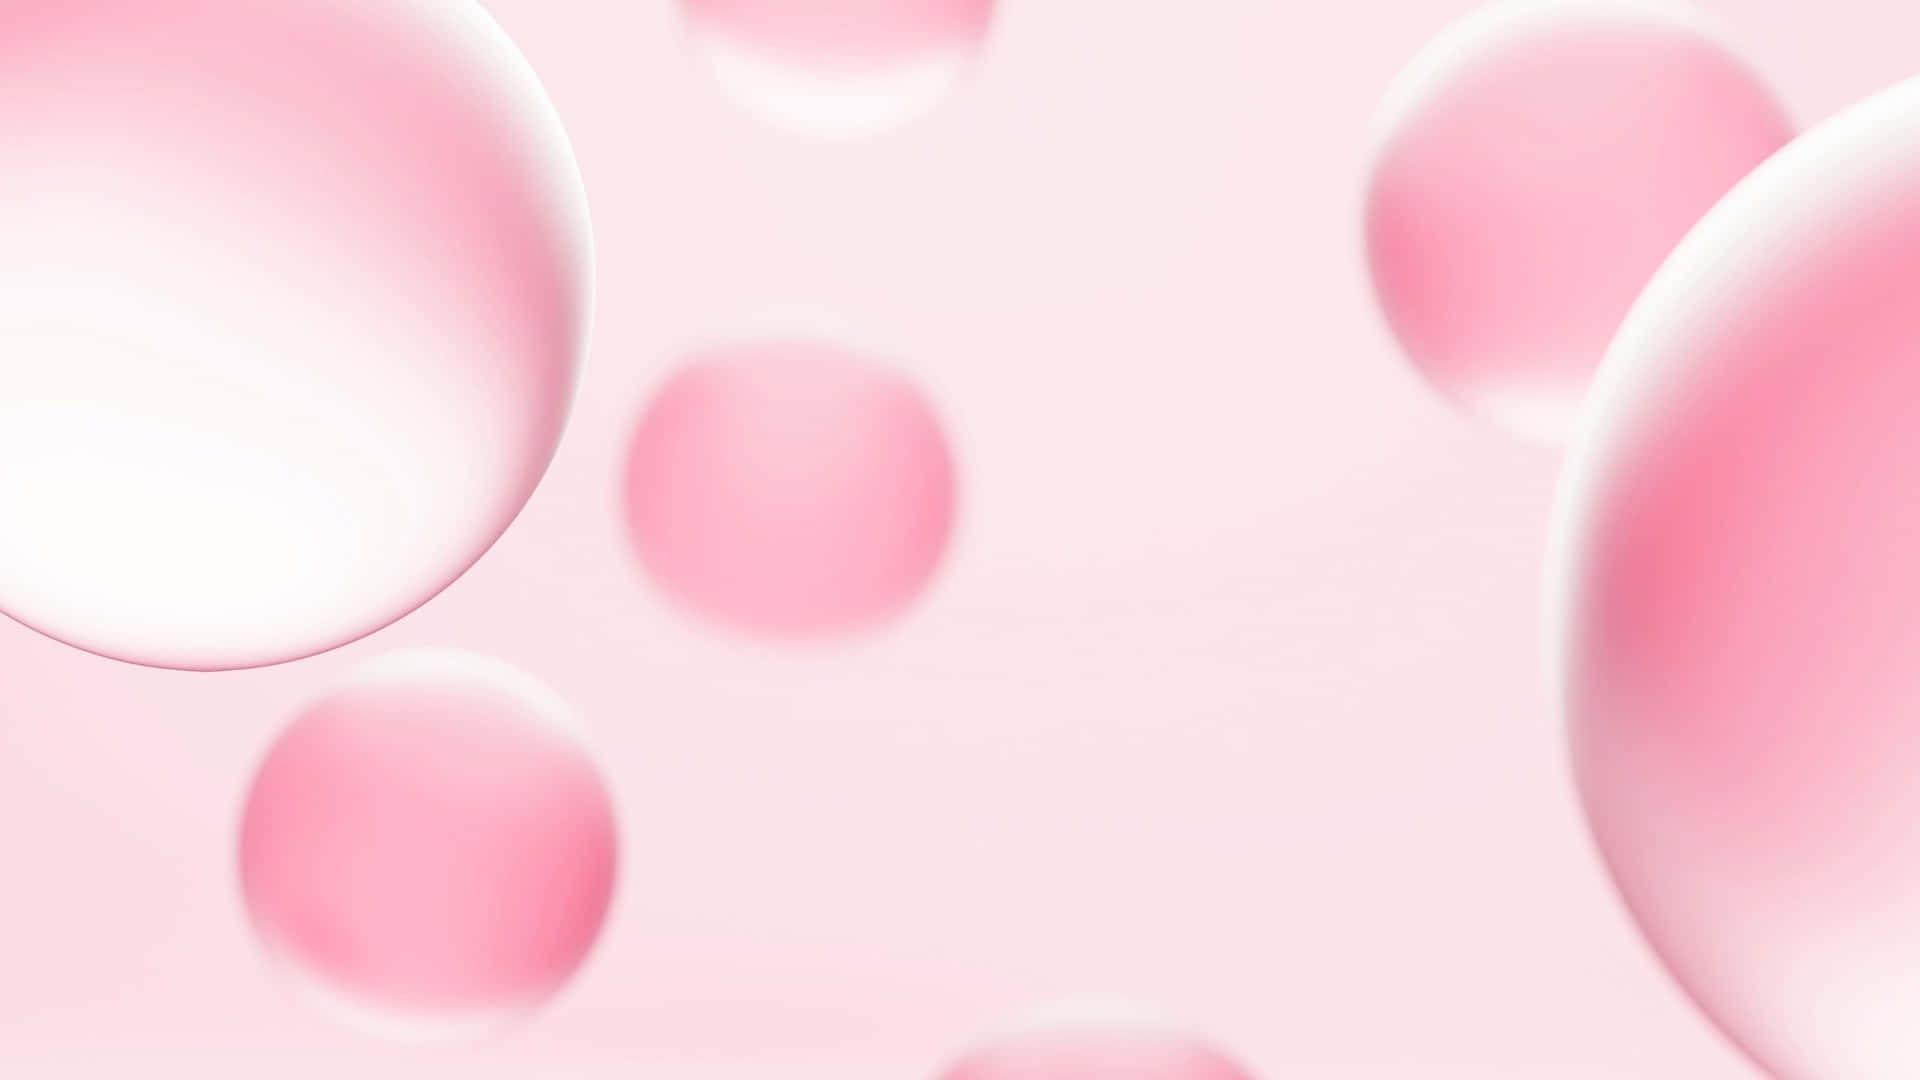 pink bubbles wallpaper